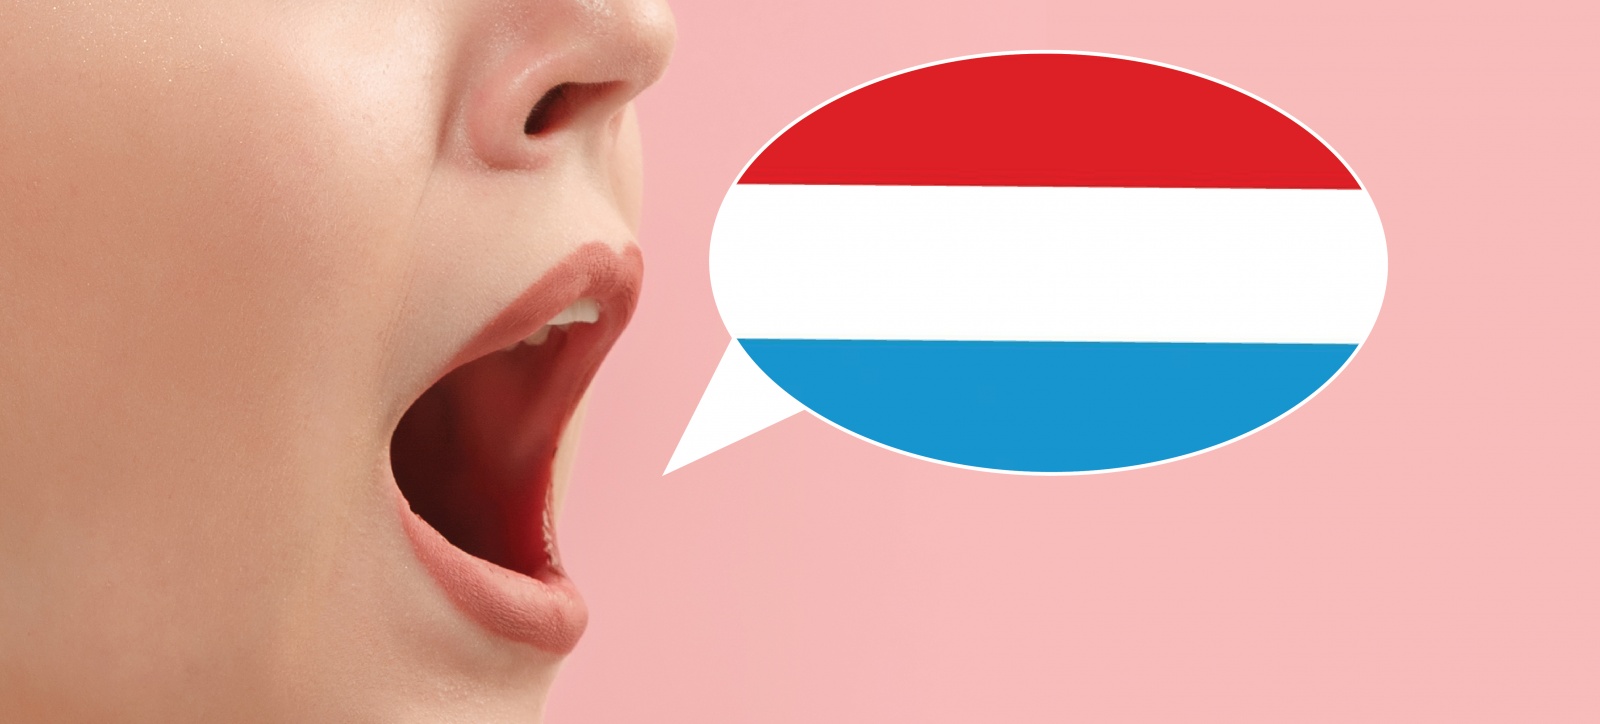 Bilingue, trilingue Qu'est ce qui est le mieux  ? - Conférence - Resonanz